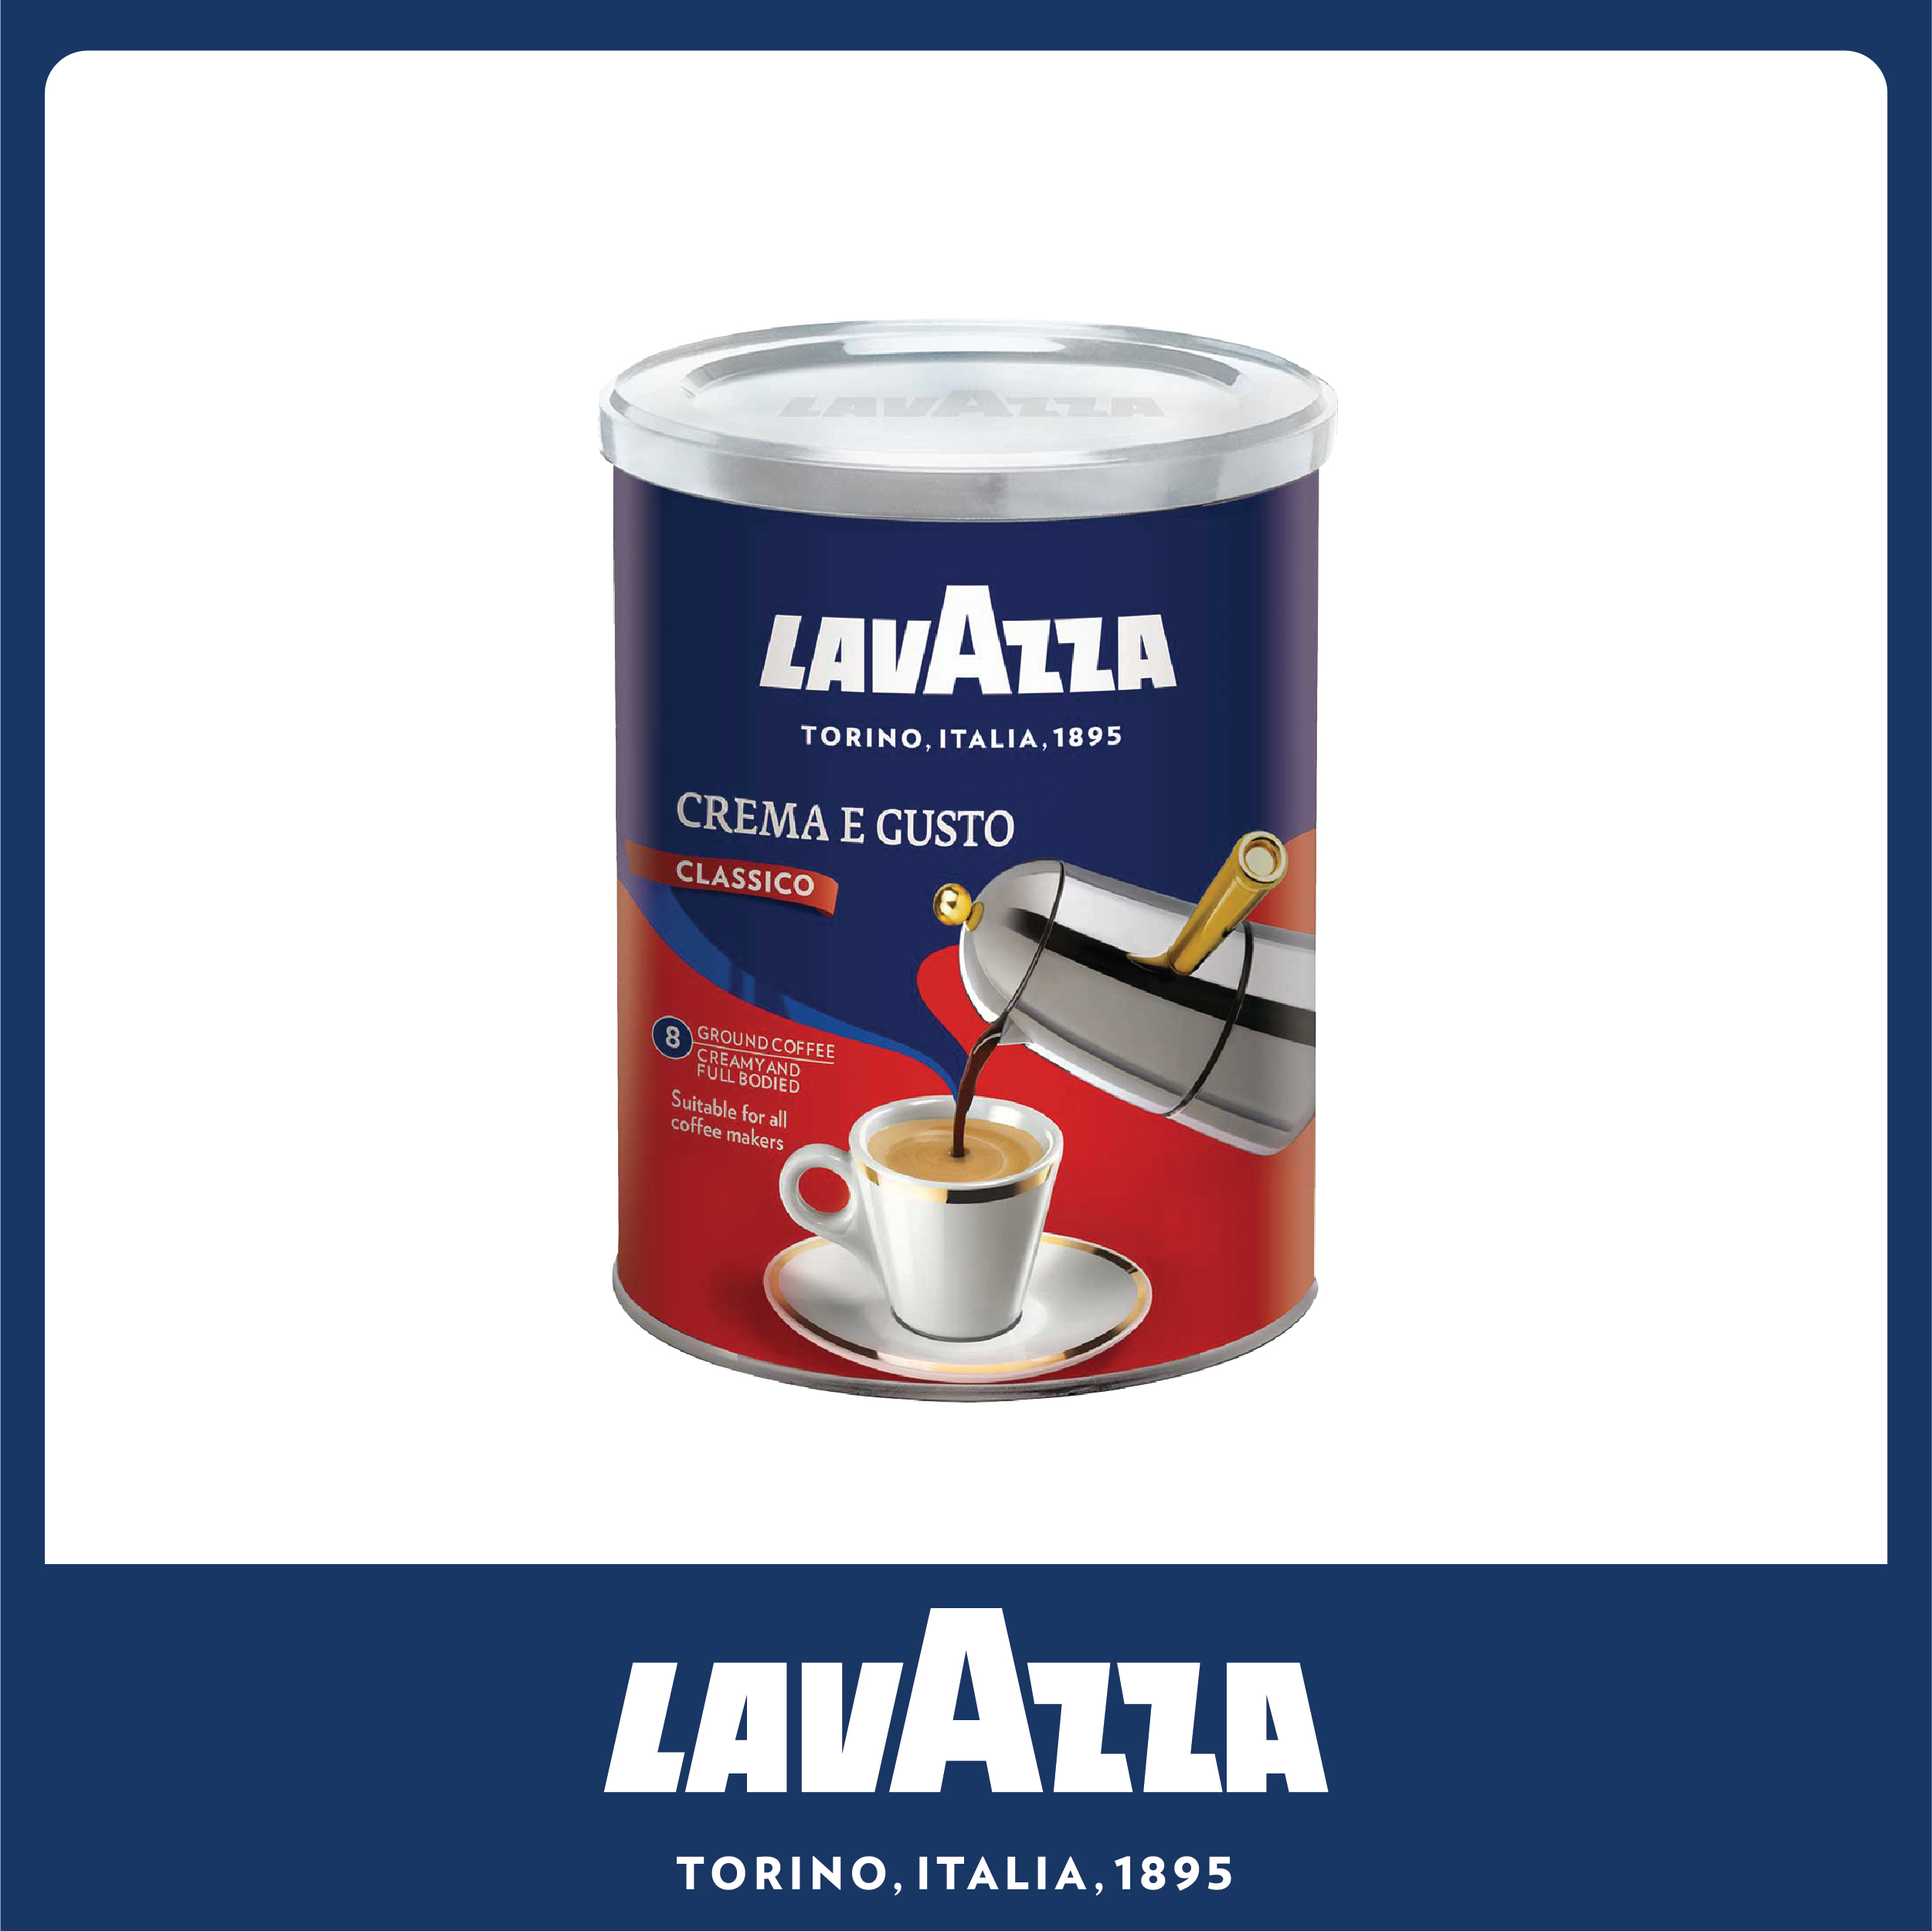 Lavazza Classico Crema E Gusto Ground Coffee 250g  ลาวาซซ่า กาแฟคั่วบด เครม่า อี กุซโต  ขนาด 250 กรัม (8820)